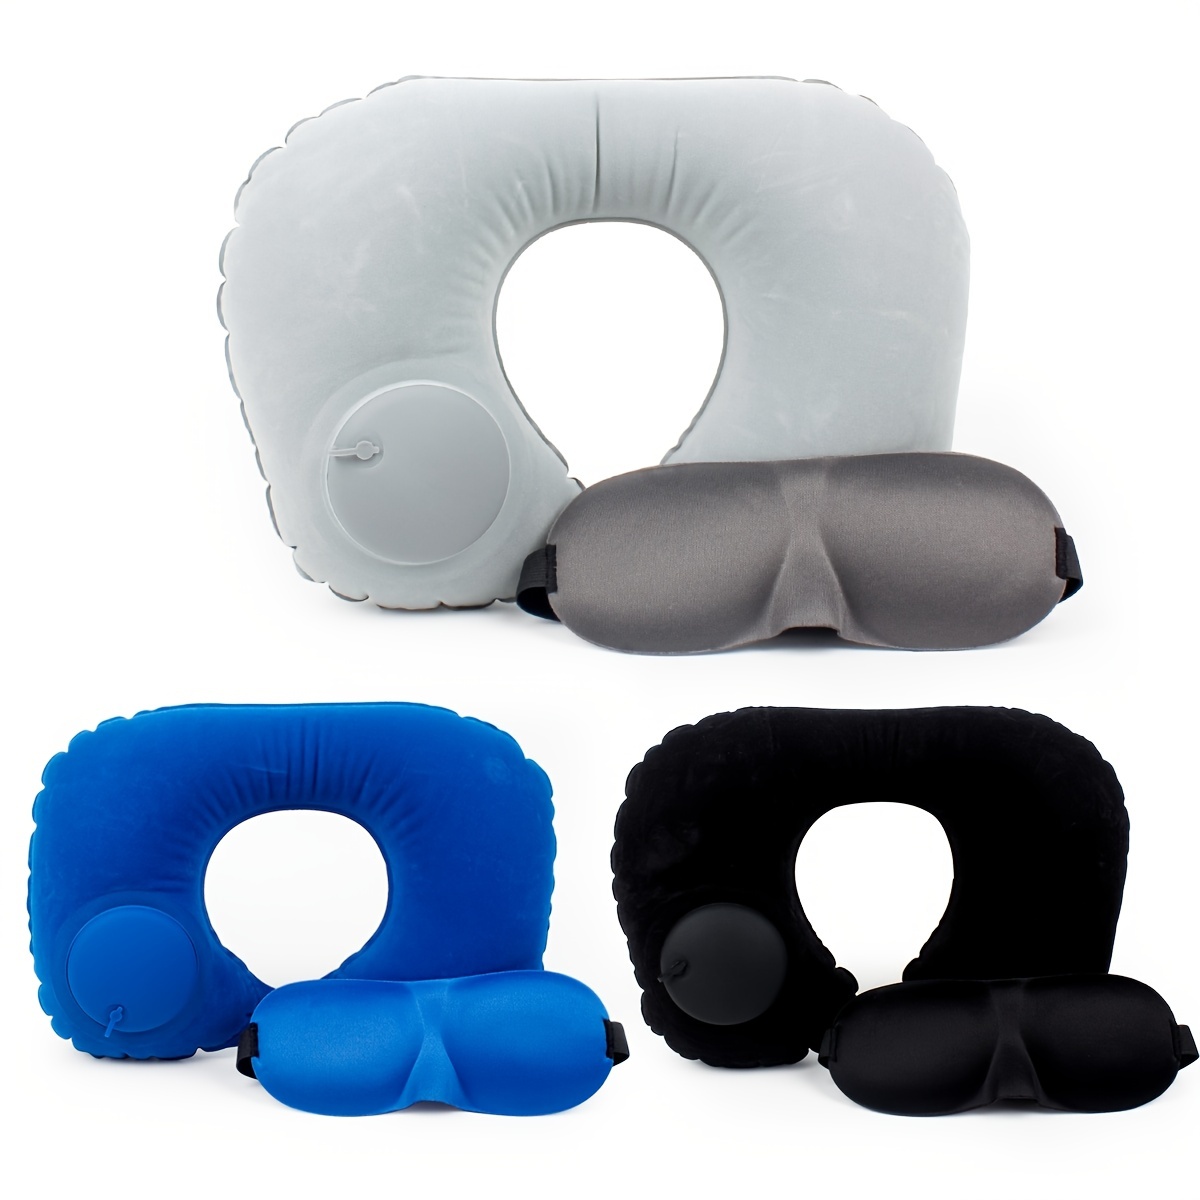 Almohada inflable de avión, almohadas de viaje para el cuello, almohadas  compactas y portátiles de apoyo para la cabeza y el cuello en vuelo, cojín